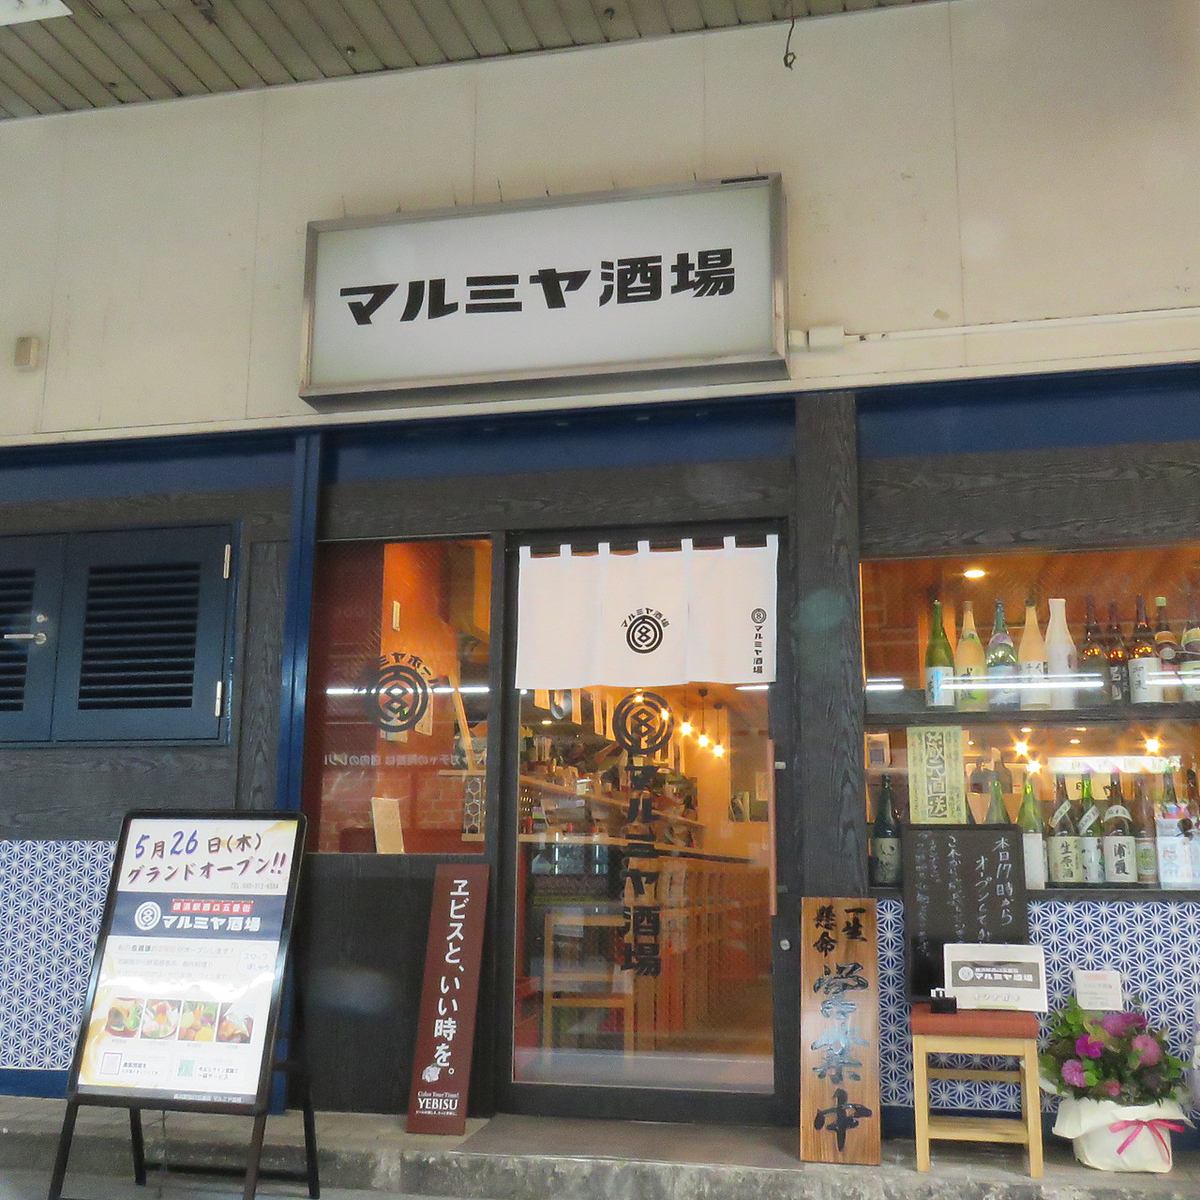 요코하마 역 도보 30 초의 좋은 입지 × 제철 생선을 즐겨주세요!